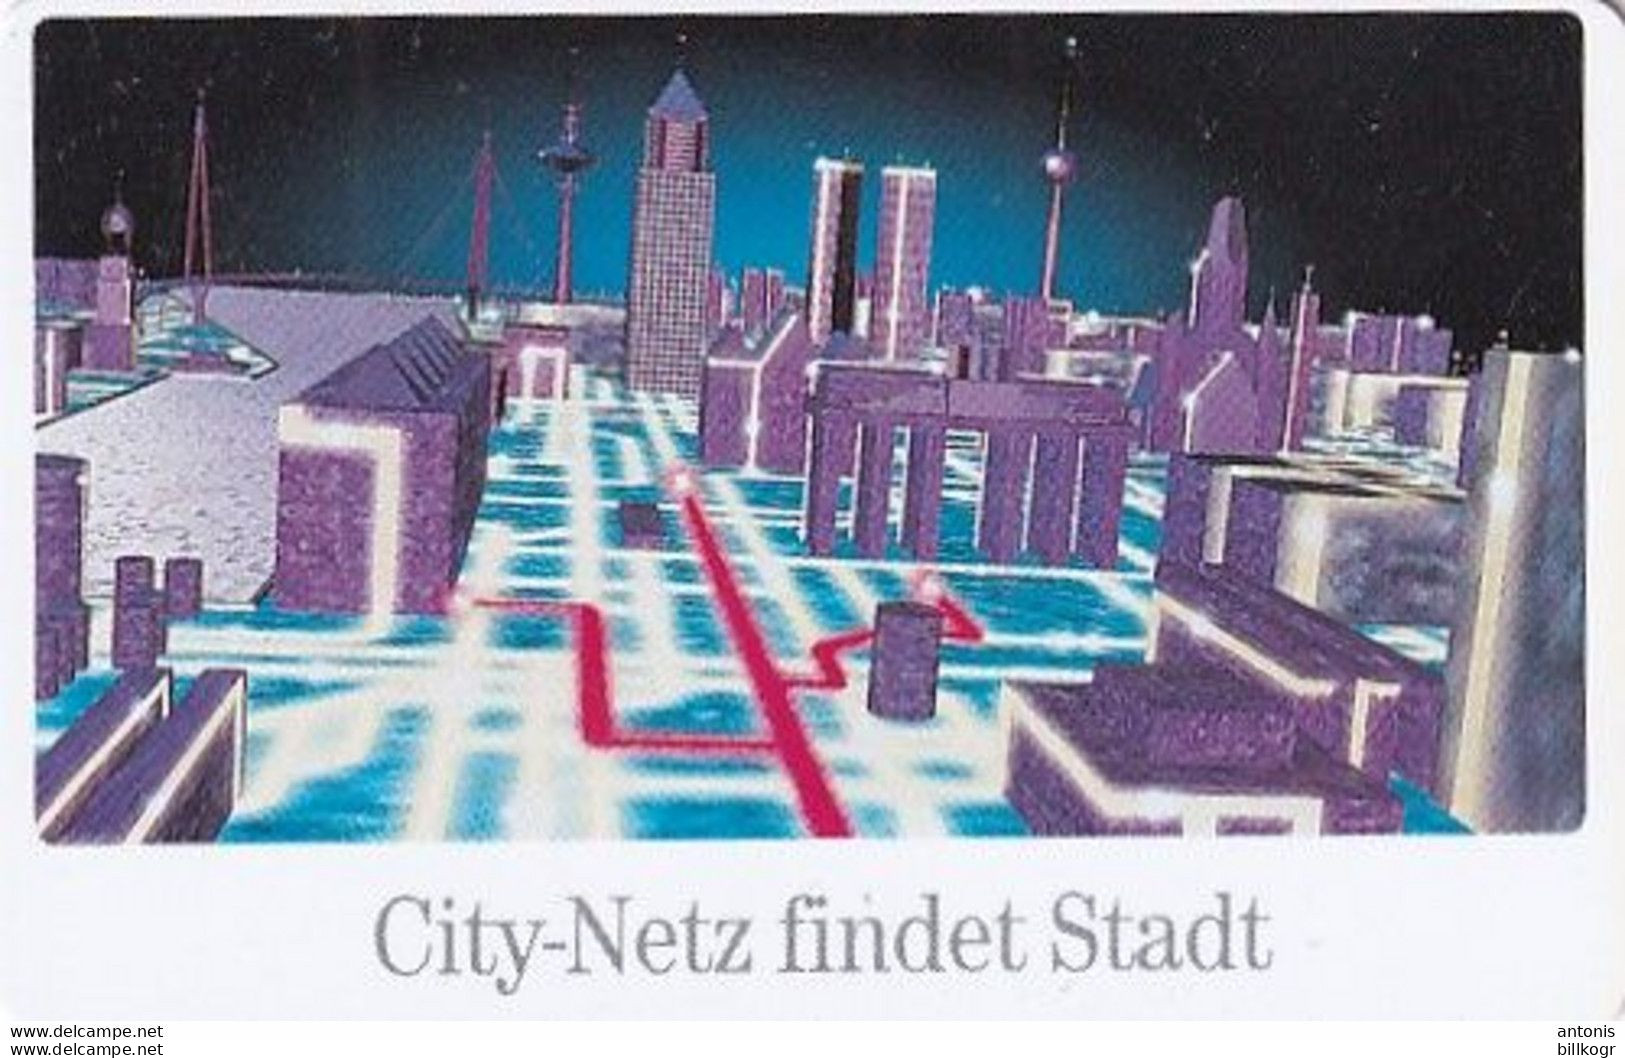 GERMANY(chip) - City-Netz Der Deutschen Telekom(A 01), Tirage 20000, 02/96, Used - A + AD-Series : D. Telekom AG Advertisement